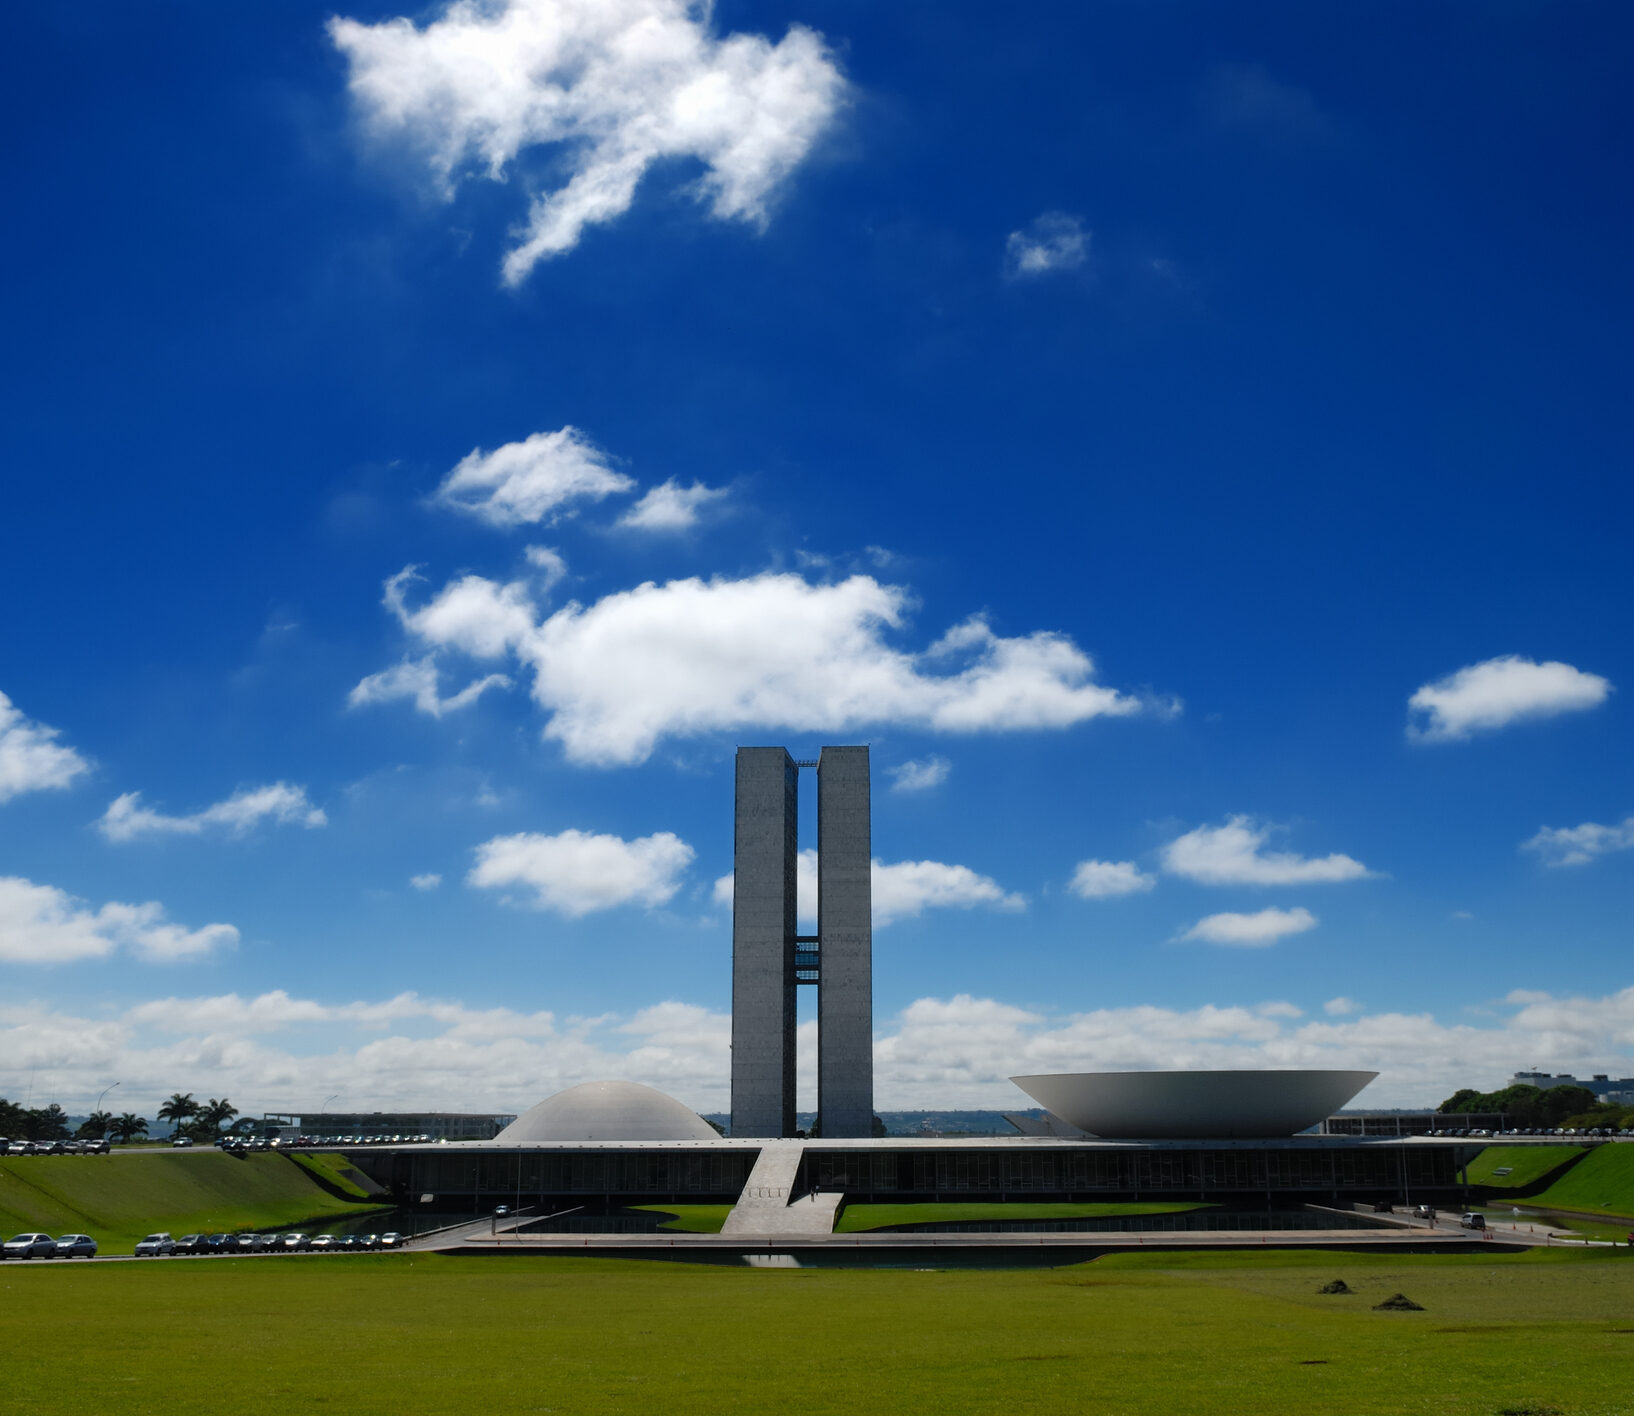 O Congresso Nacional abriga as duas casas legislativas, a Câmara dos Deputados e o Senado Federal, e é um marco arquitetônico de Brasília